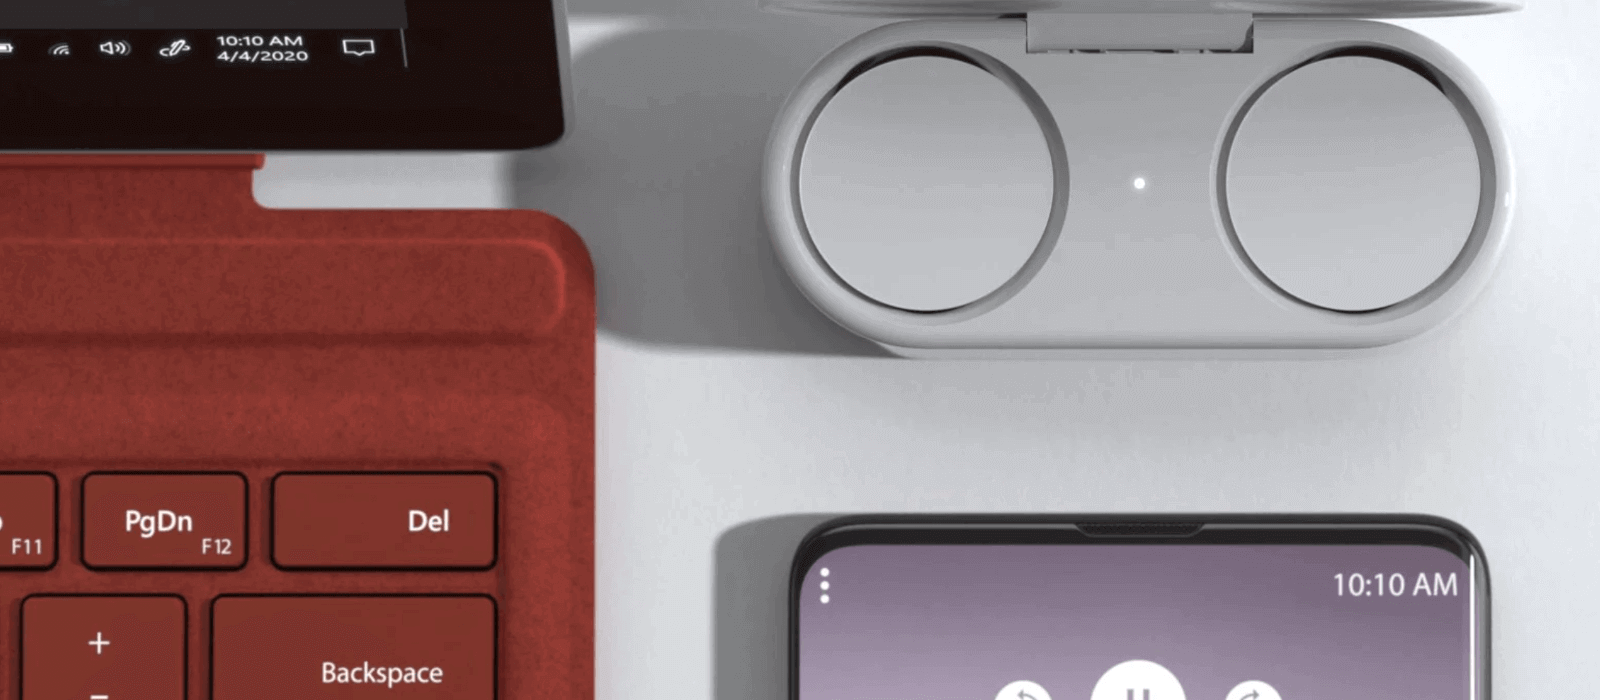 Die Ladehülle mit den enthaltenen Surface Earbuds steht neben dem Surface Pro 7 mit dem mohnroten Type Cover sowie einem Smartphone